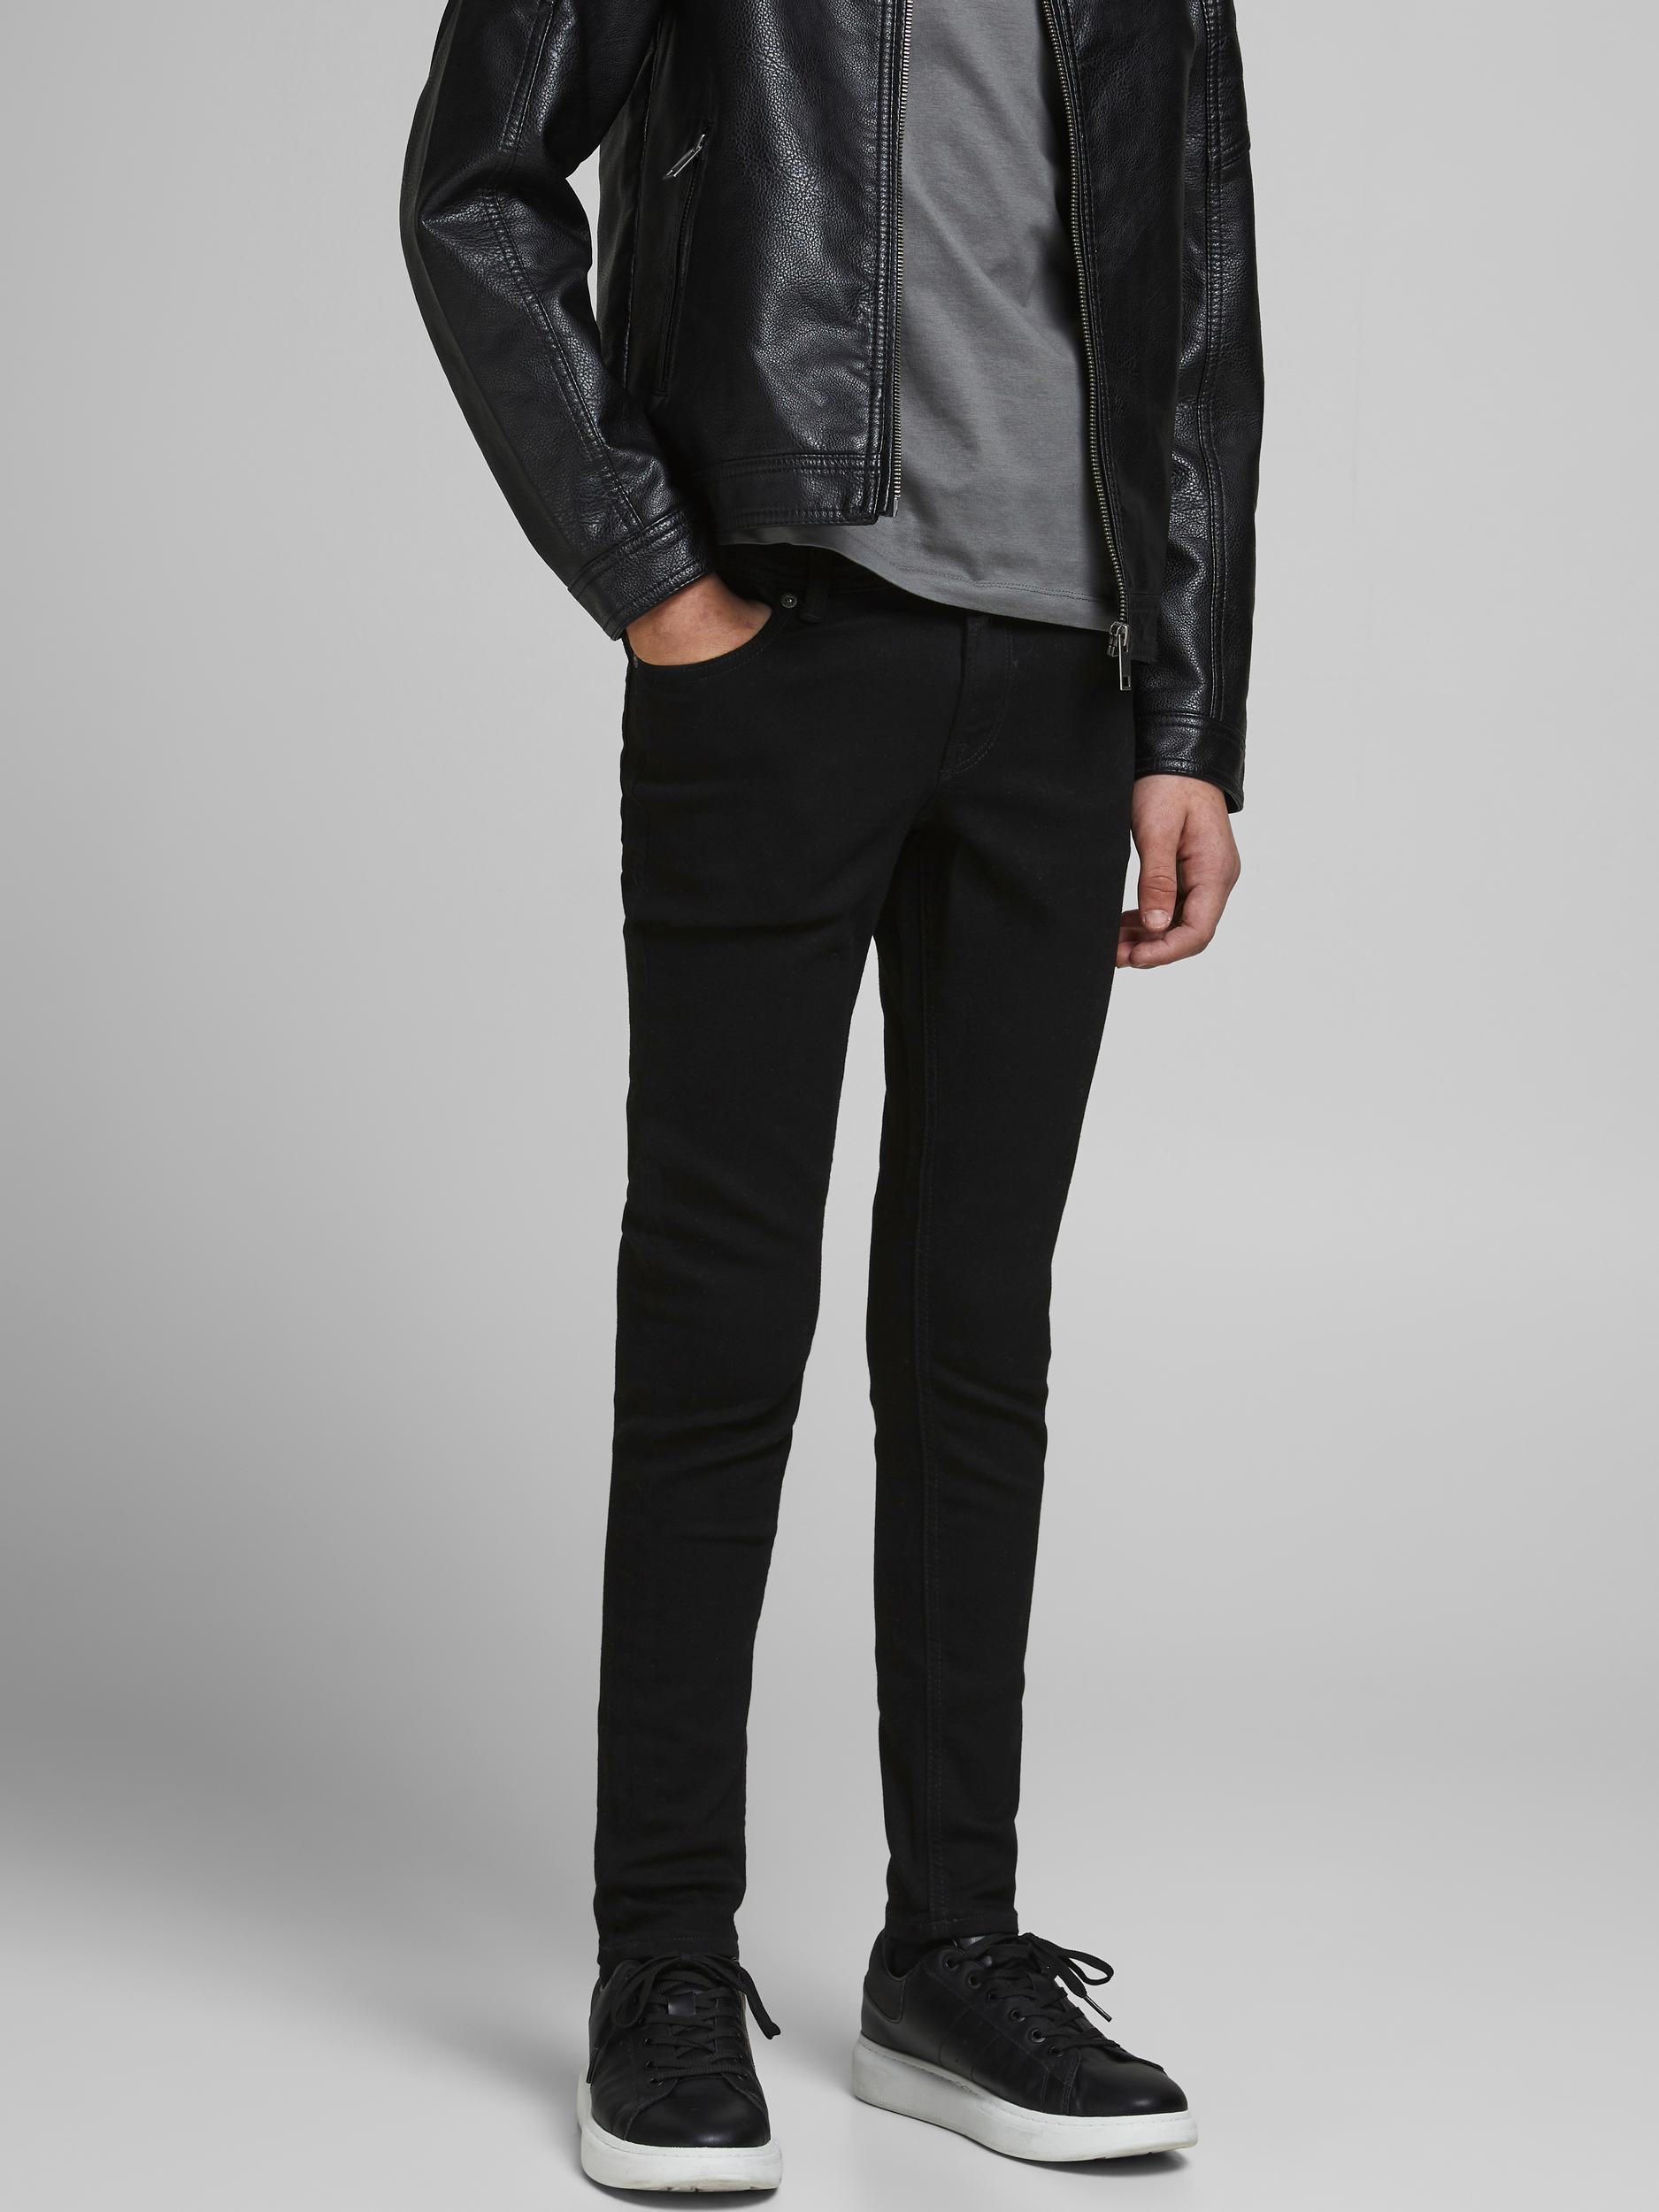 Liam 829 Jeans, Black Denim, 152 cm